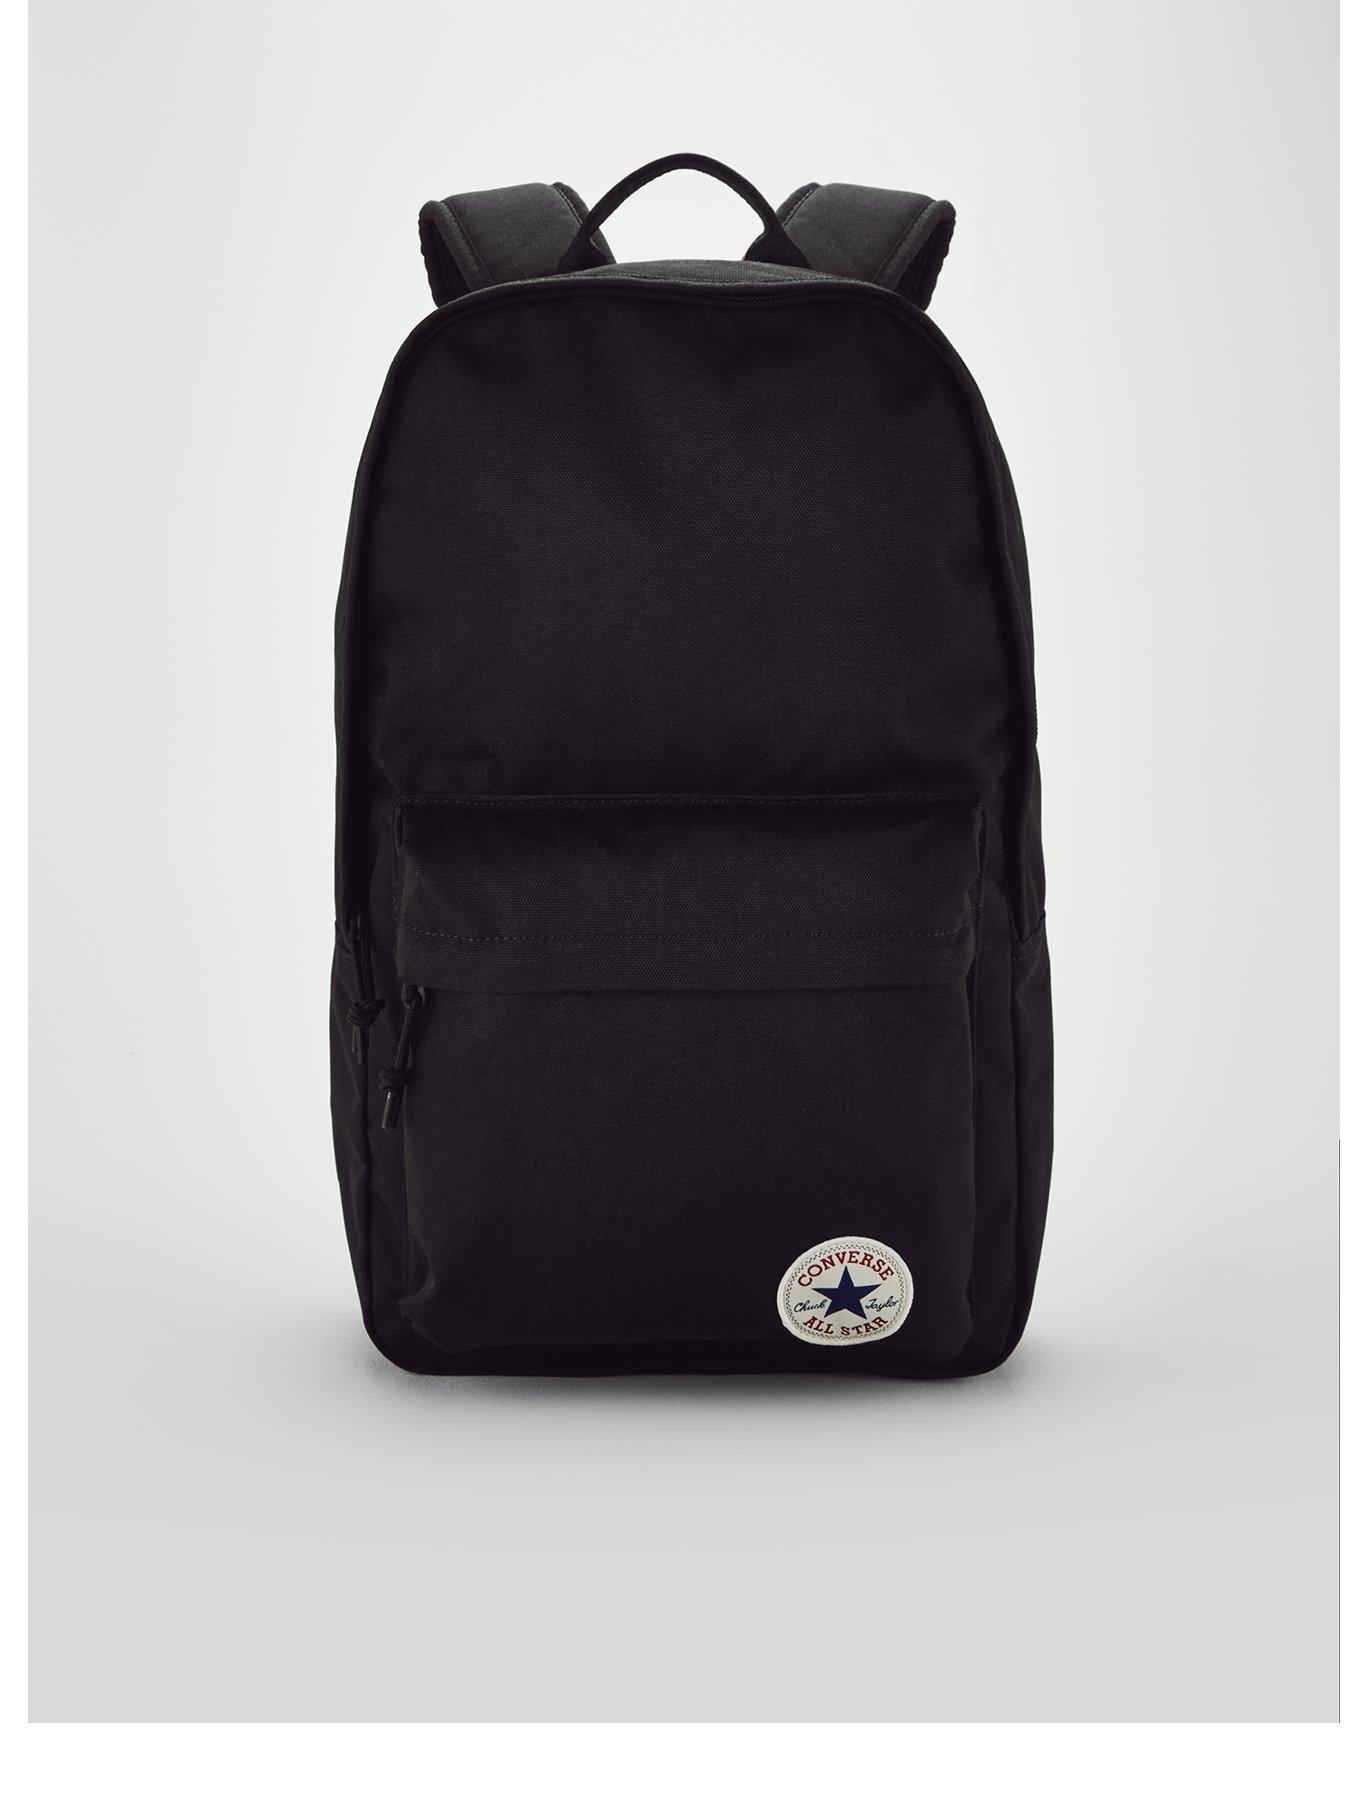 Bags \u0026 Backpacks | Gym Bags, Ruscksacks \u0026 More | Very.co.uk